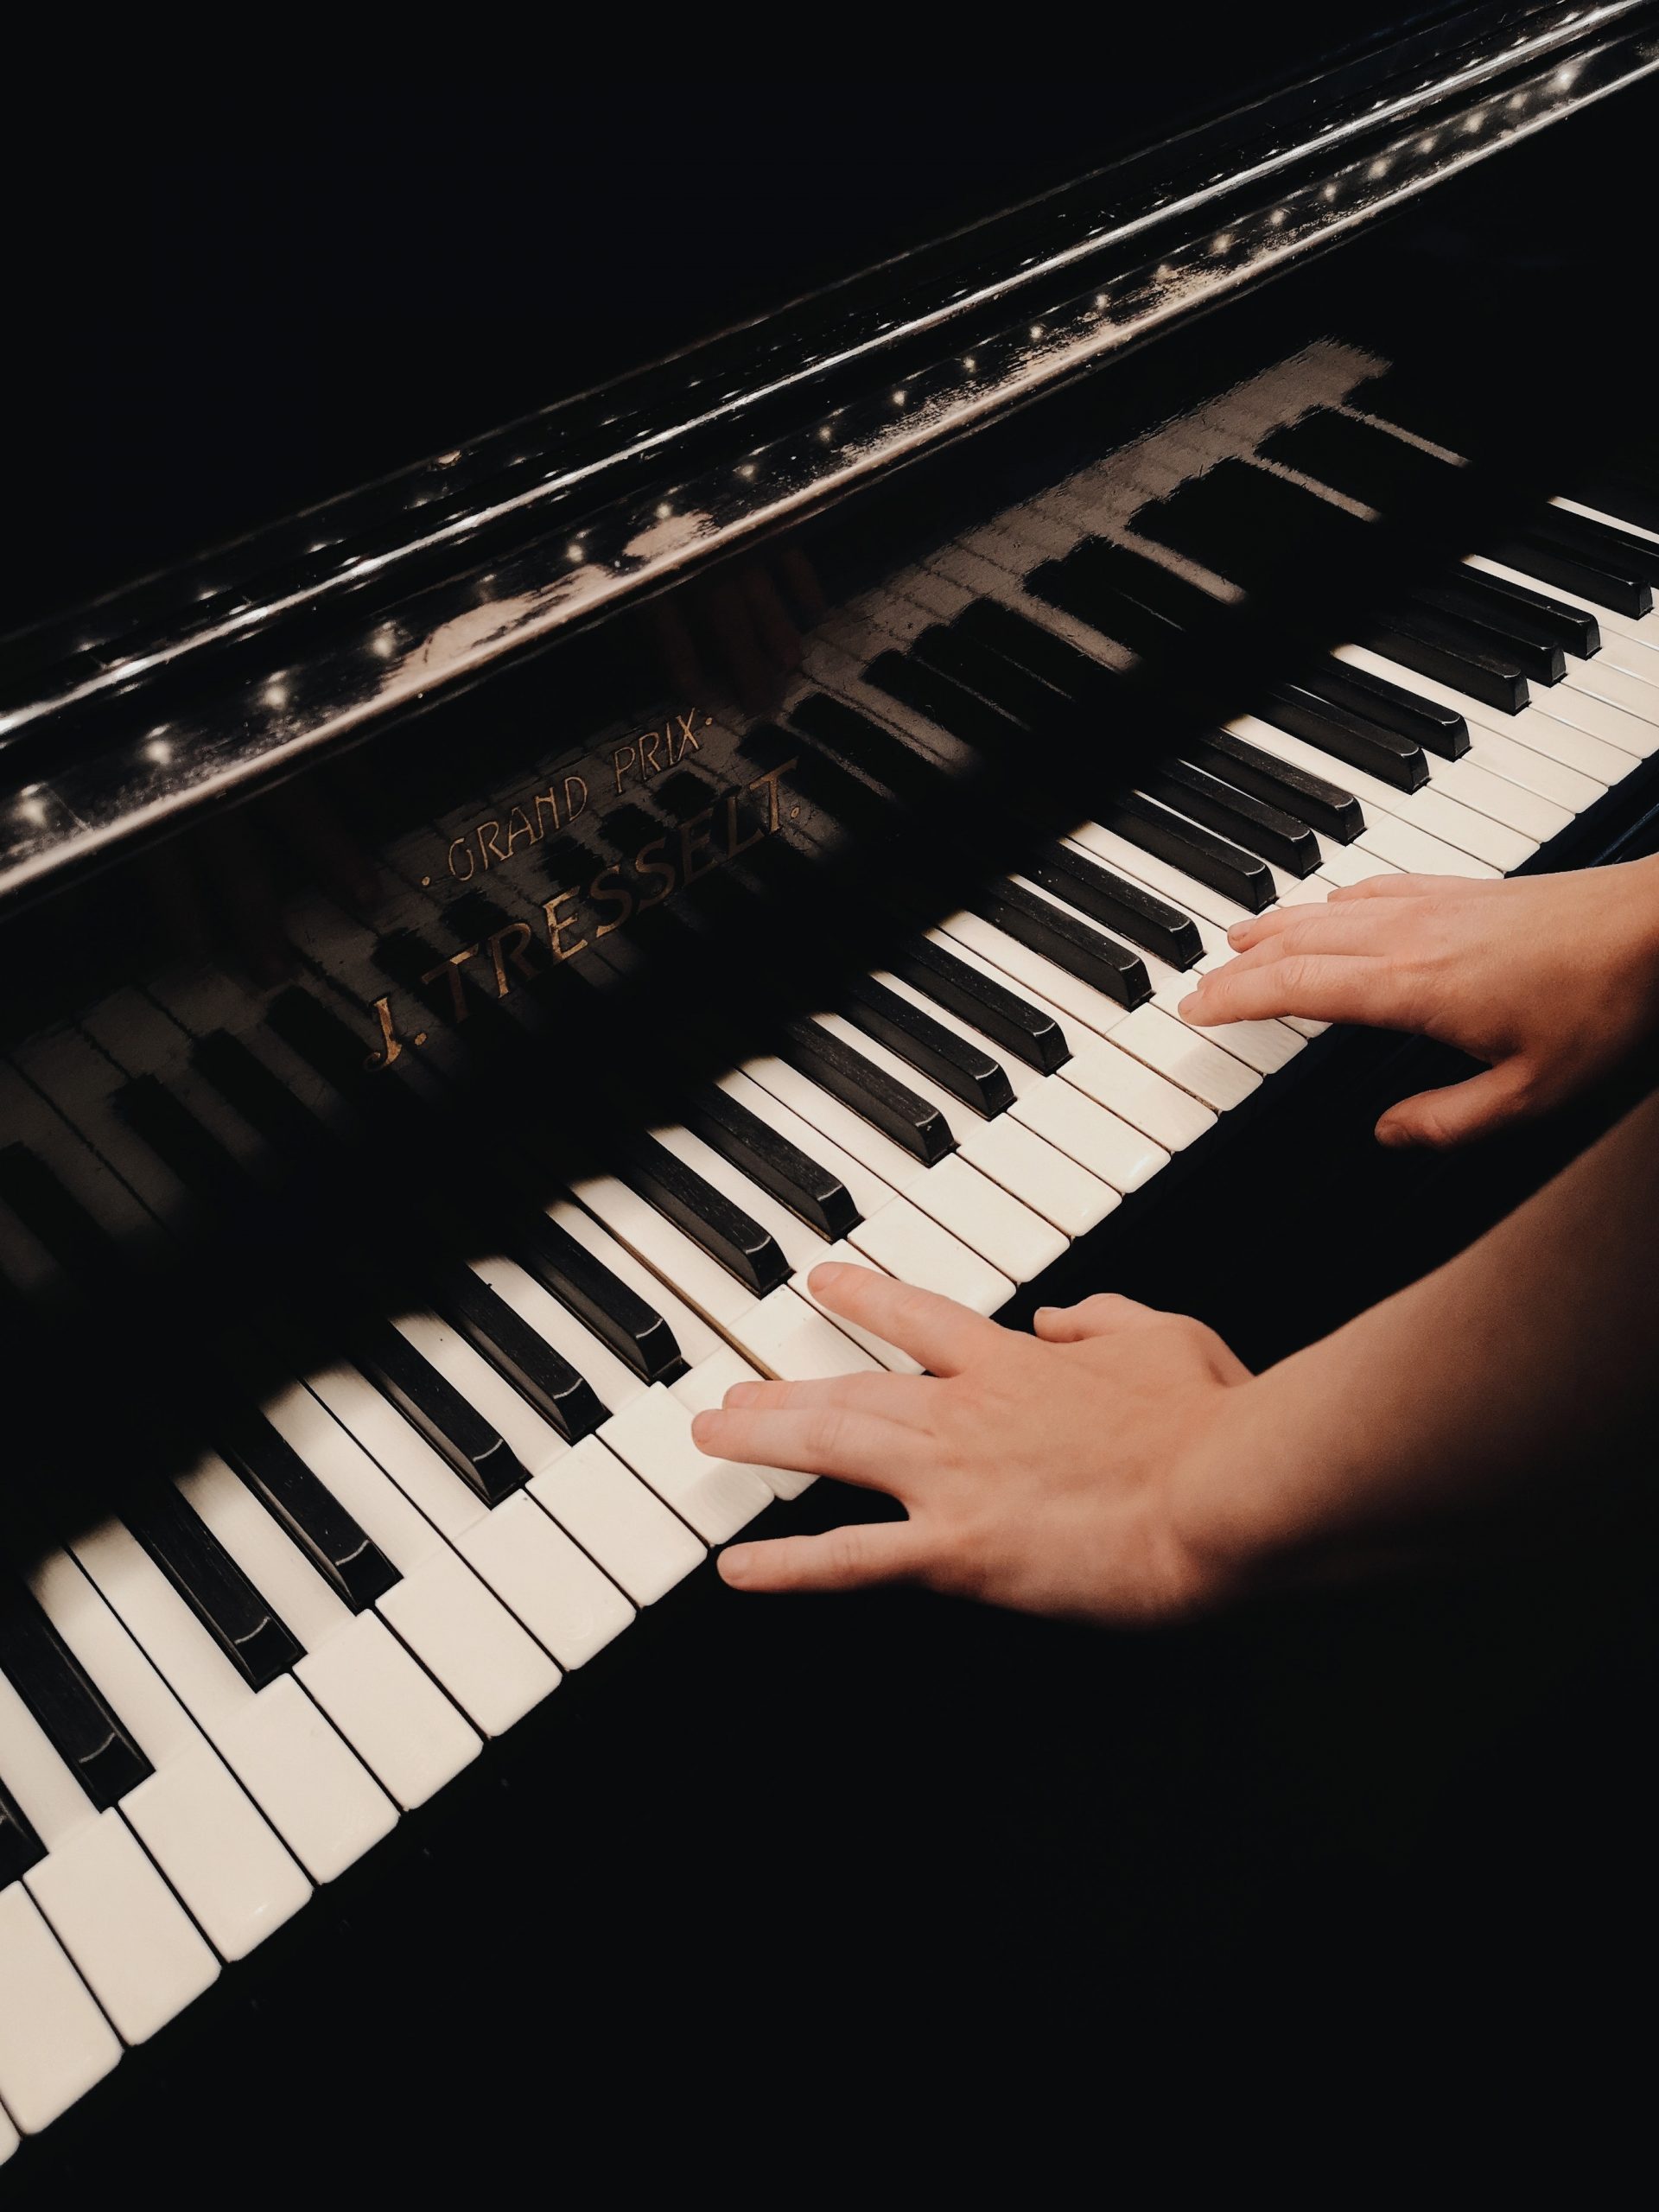 Làm sao để tìm được gia sư dạy Piano tại nhà chuyên nghiệp, đáng tin cậy?